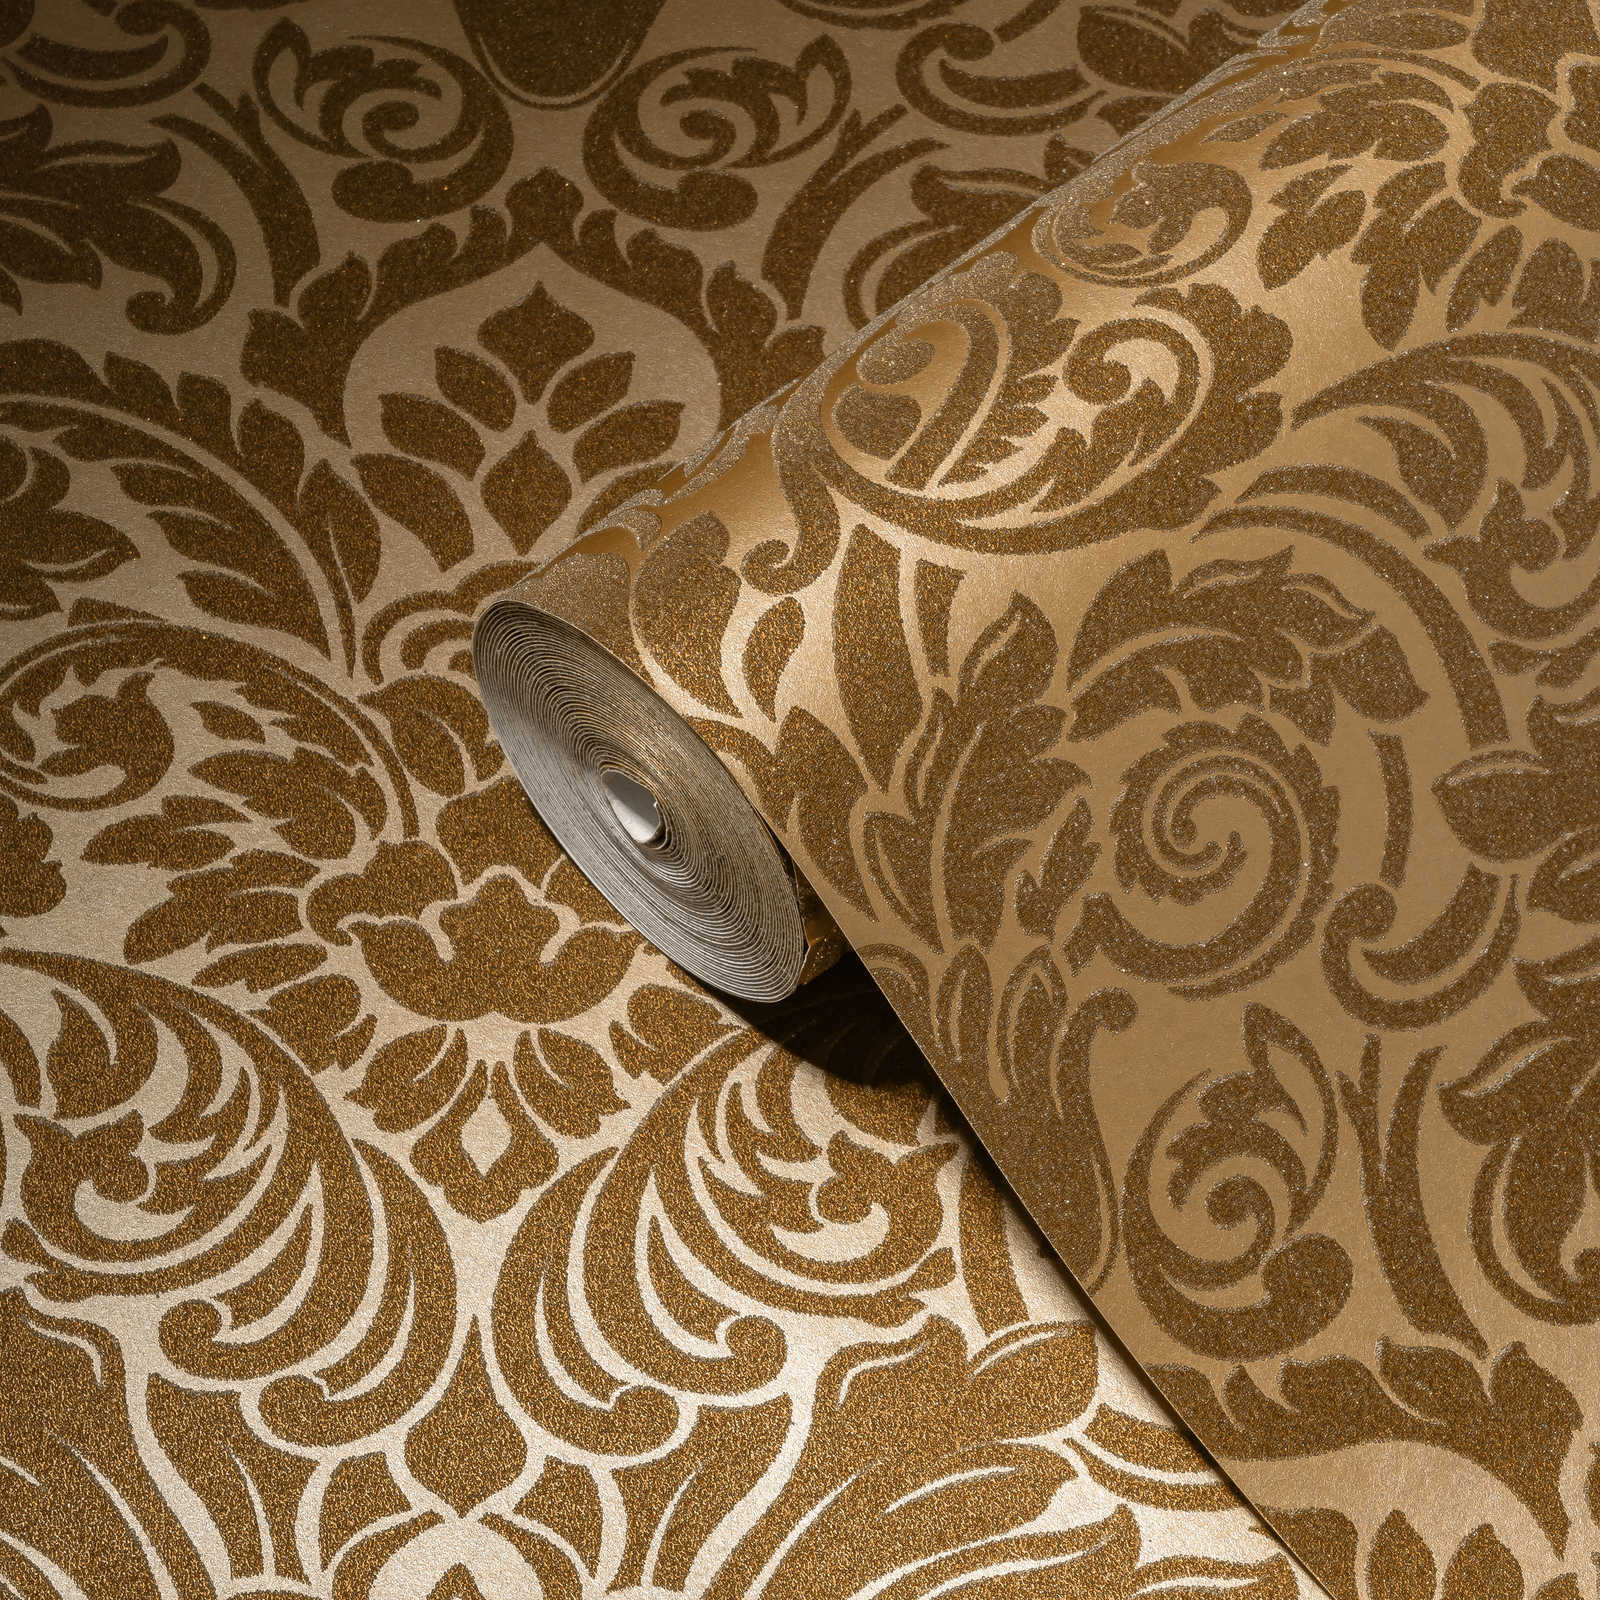             Papier peint ornemental effet métallique & design floral - or
        